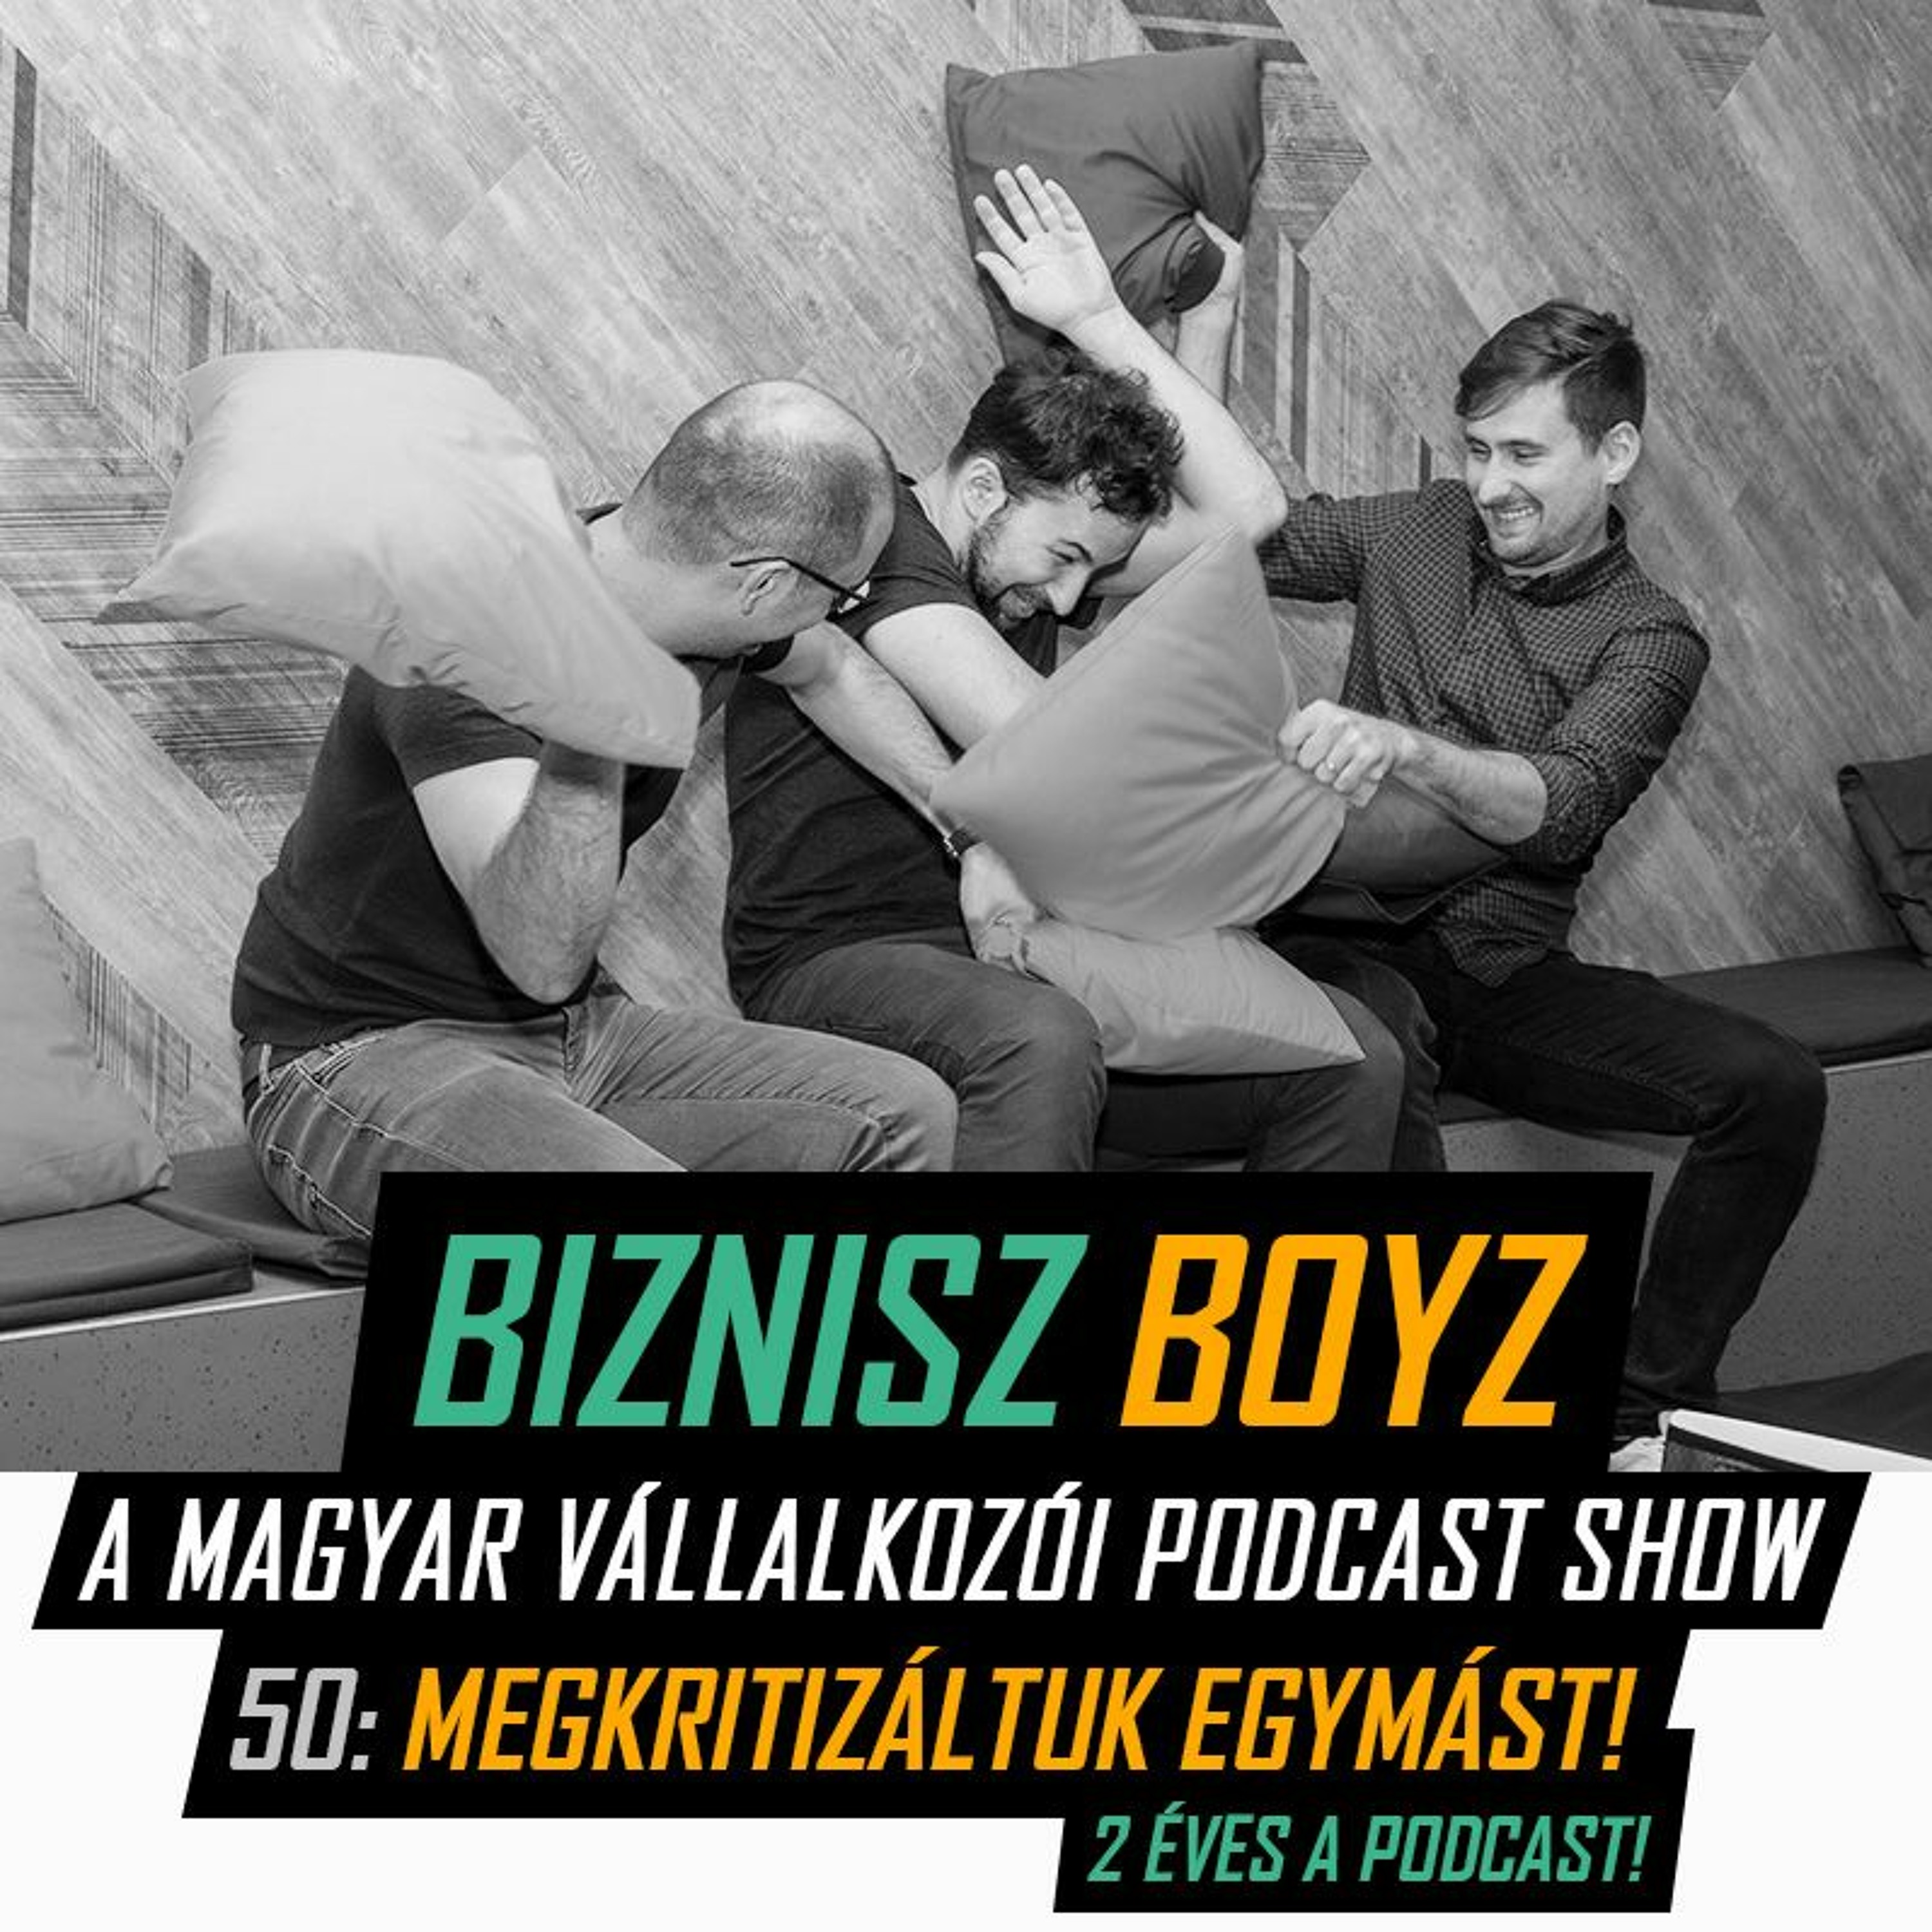 50. Megkritizáltuk egymást! - 2 éves a Podcast! | Biznisz Boyz Podcast